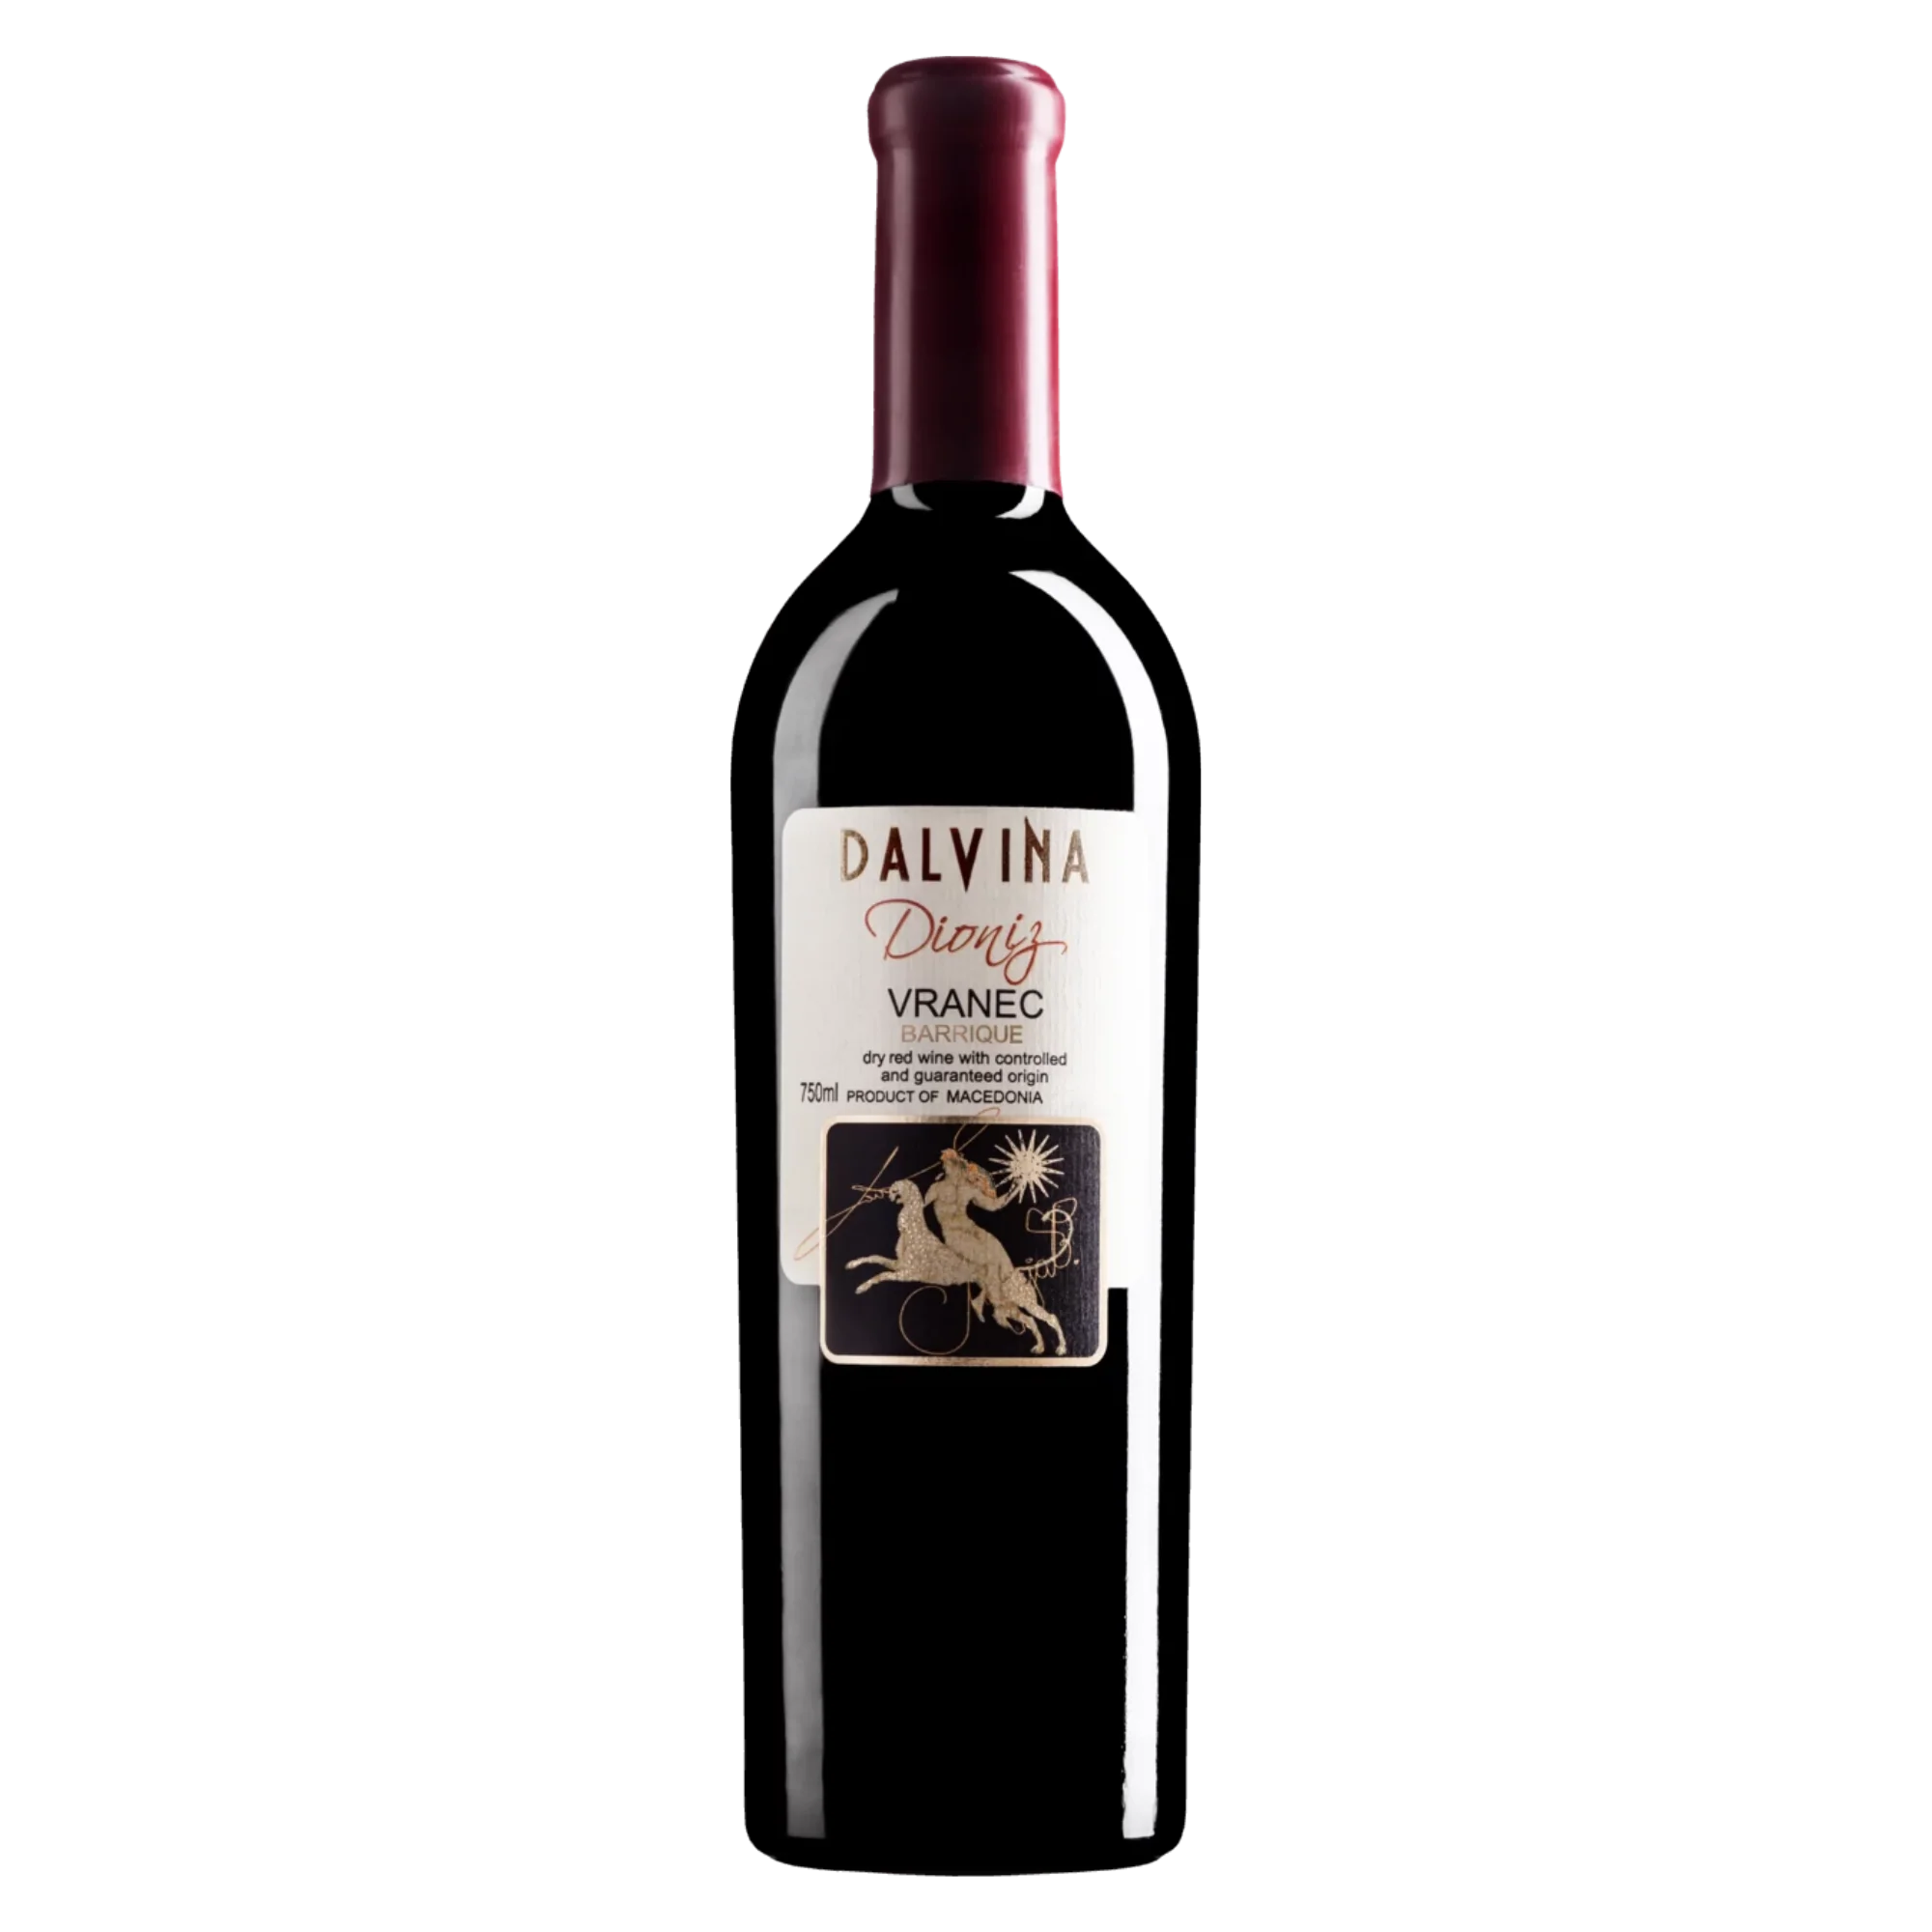 Dioniz Vranec Barrique 2016 - Rotwein trocken aus Nordmazedonien - Dalvina Winery